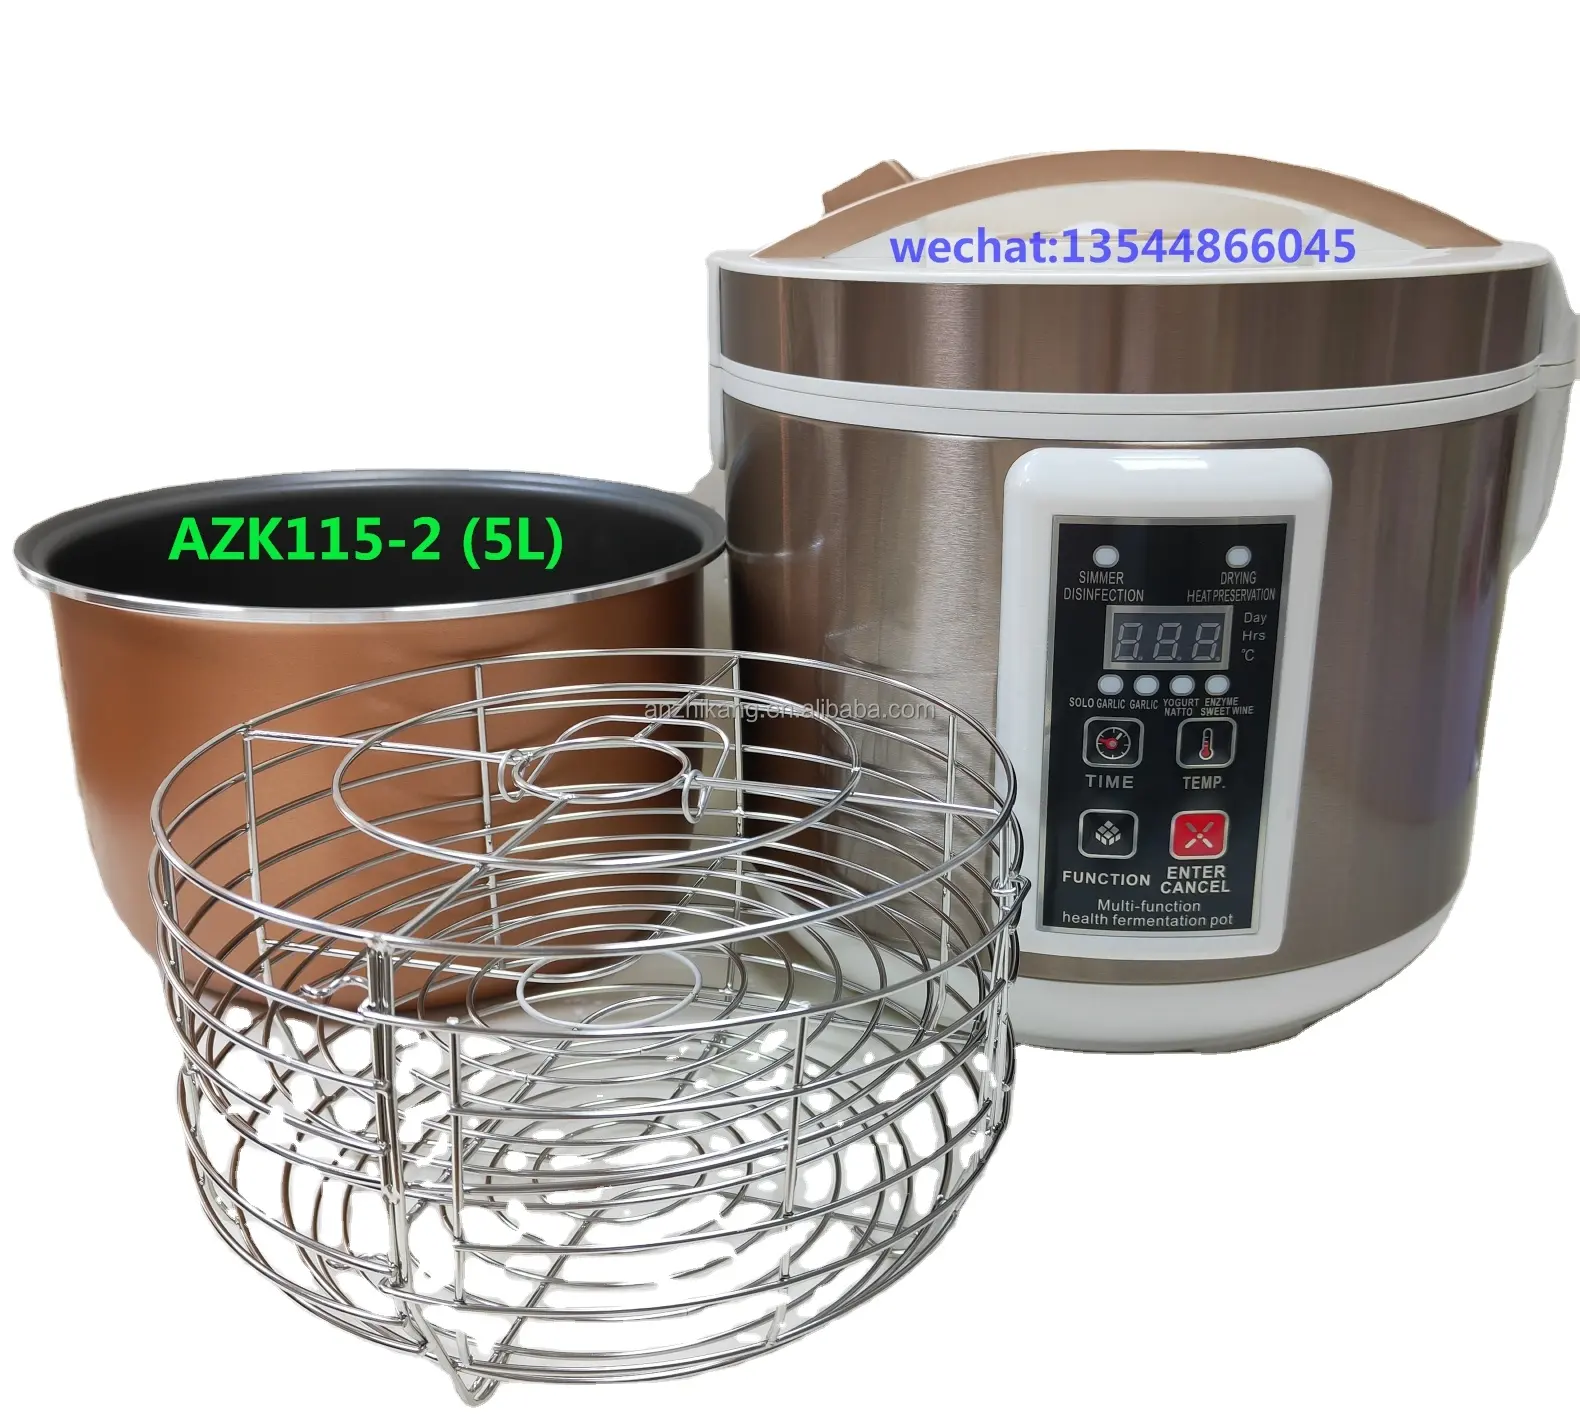 AZK115-2 home appliances smart home appliances smart heating machine